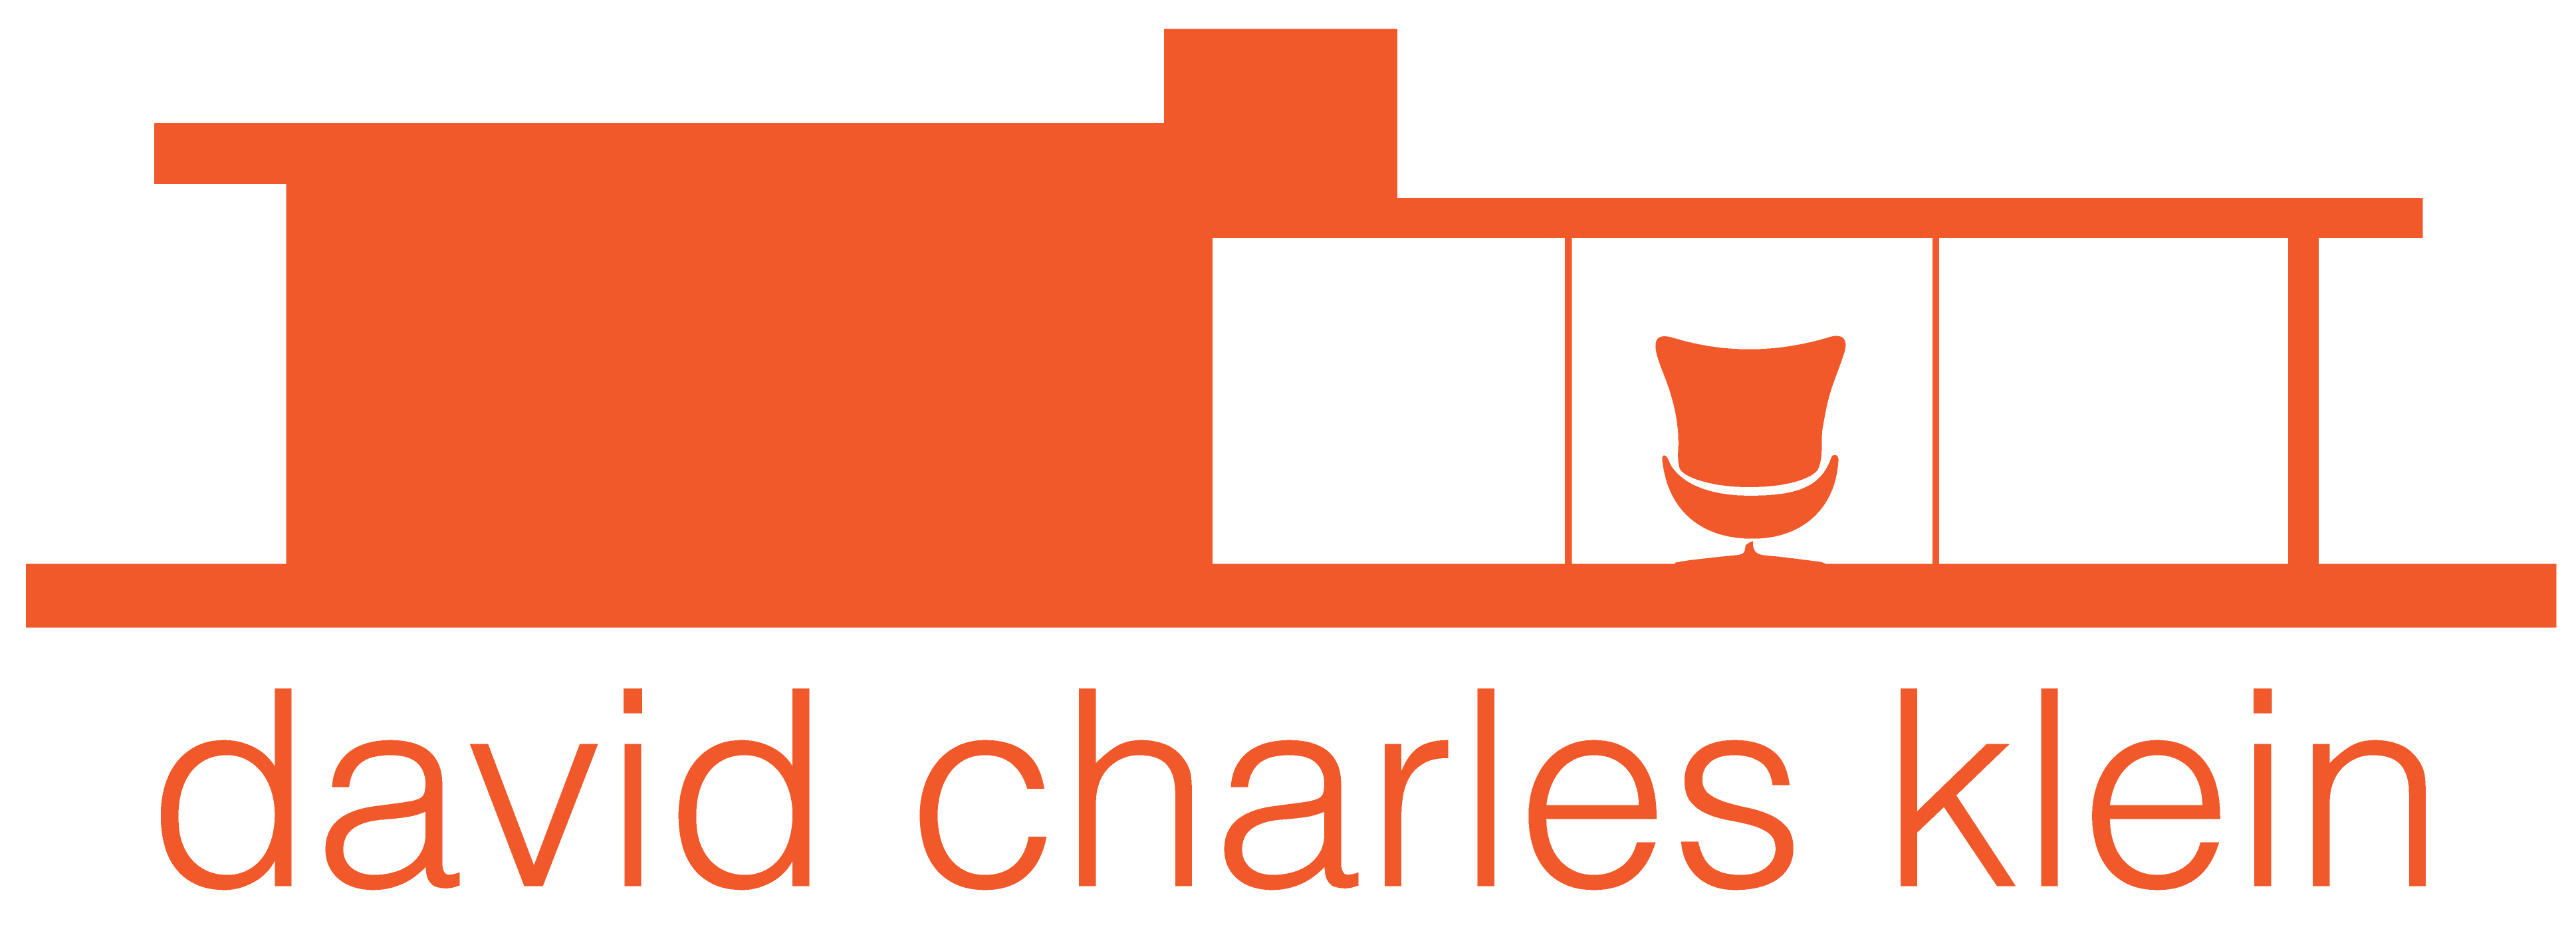 david charles klein logo